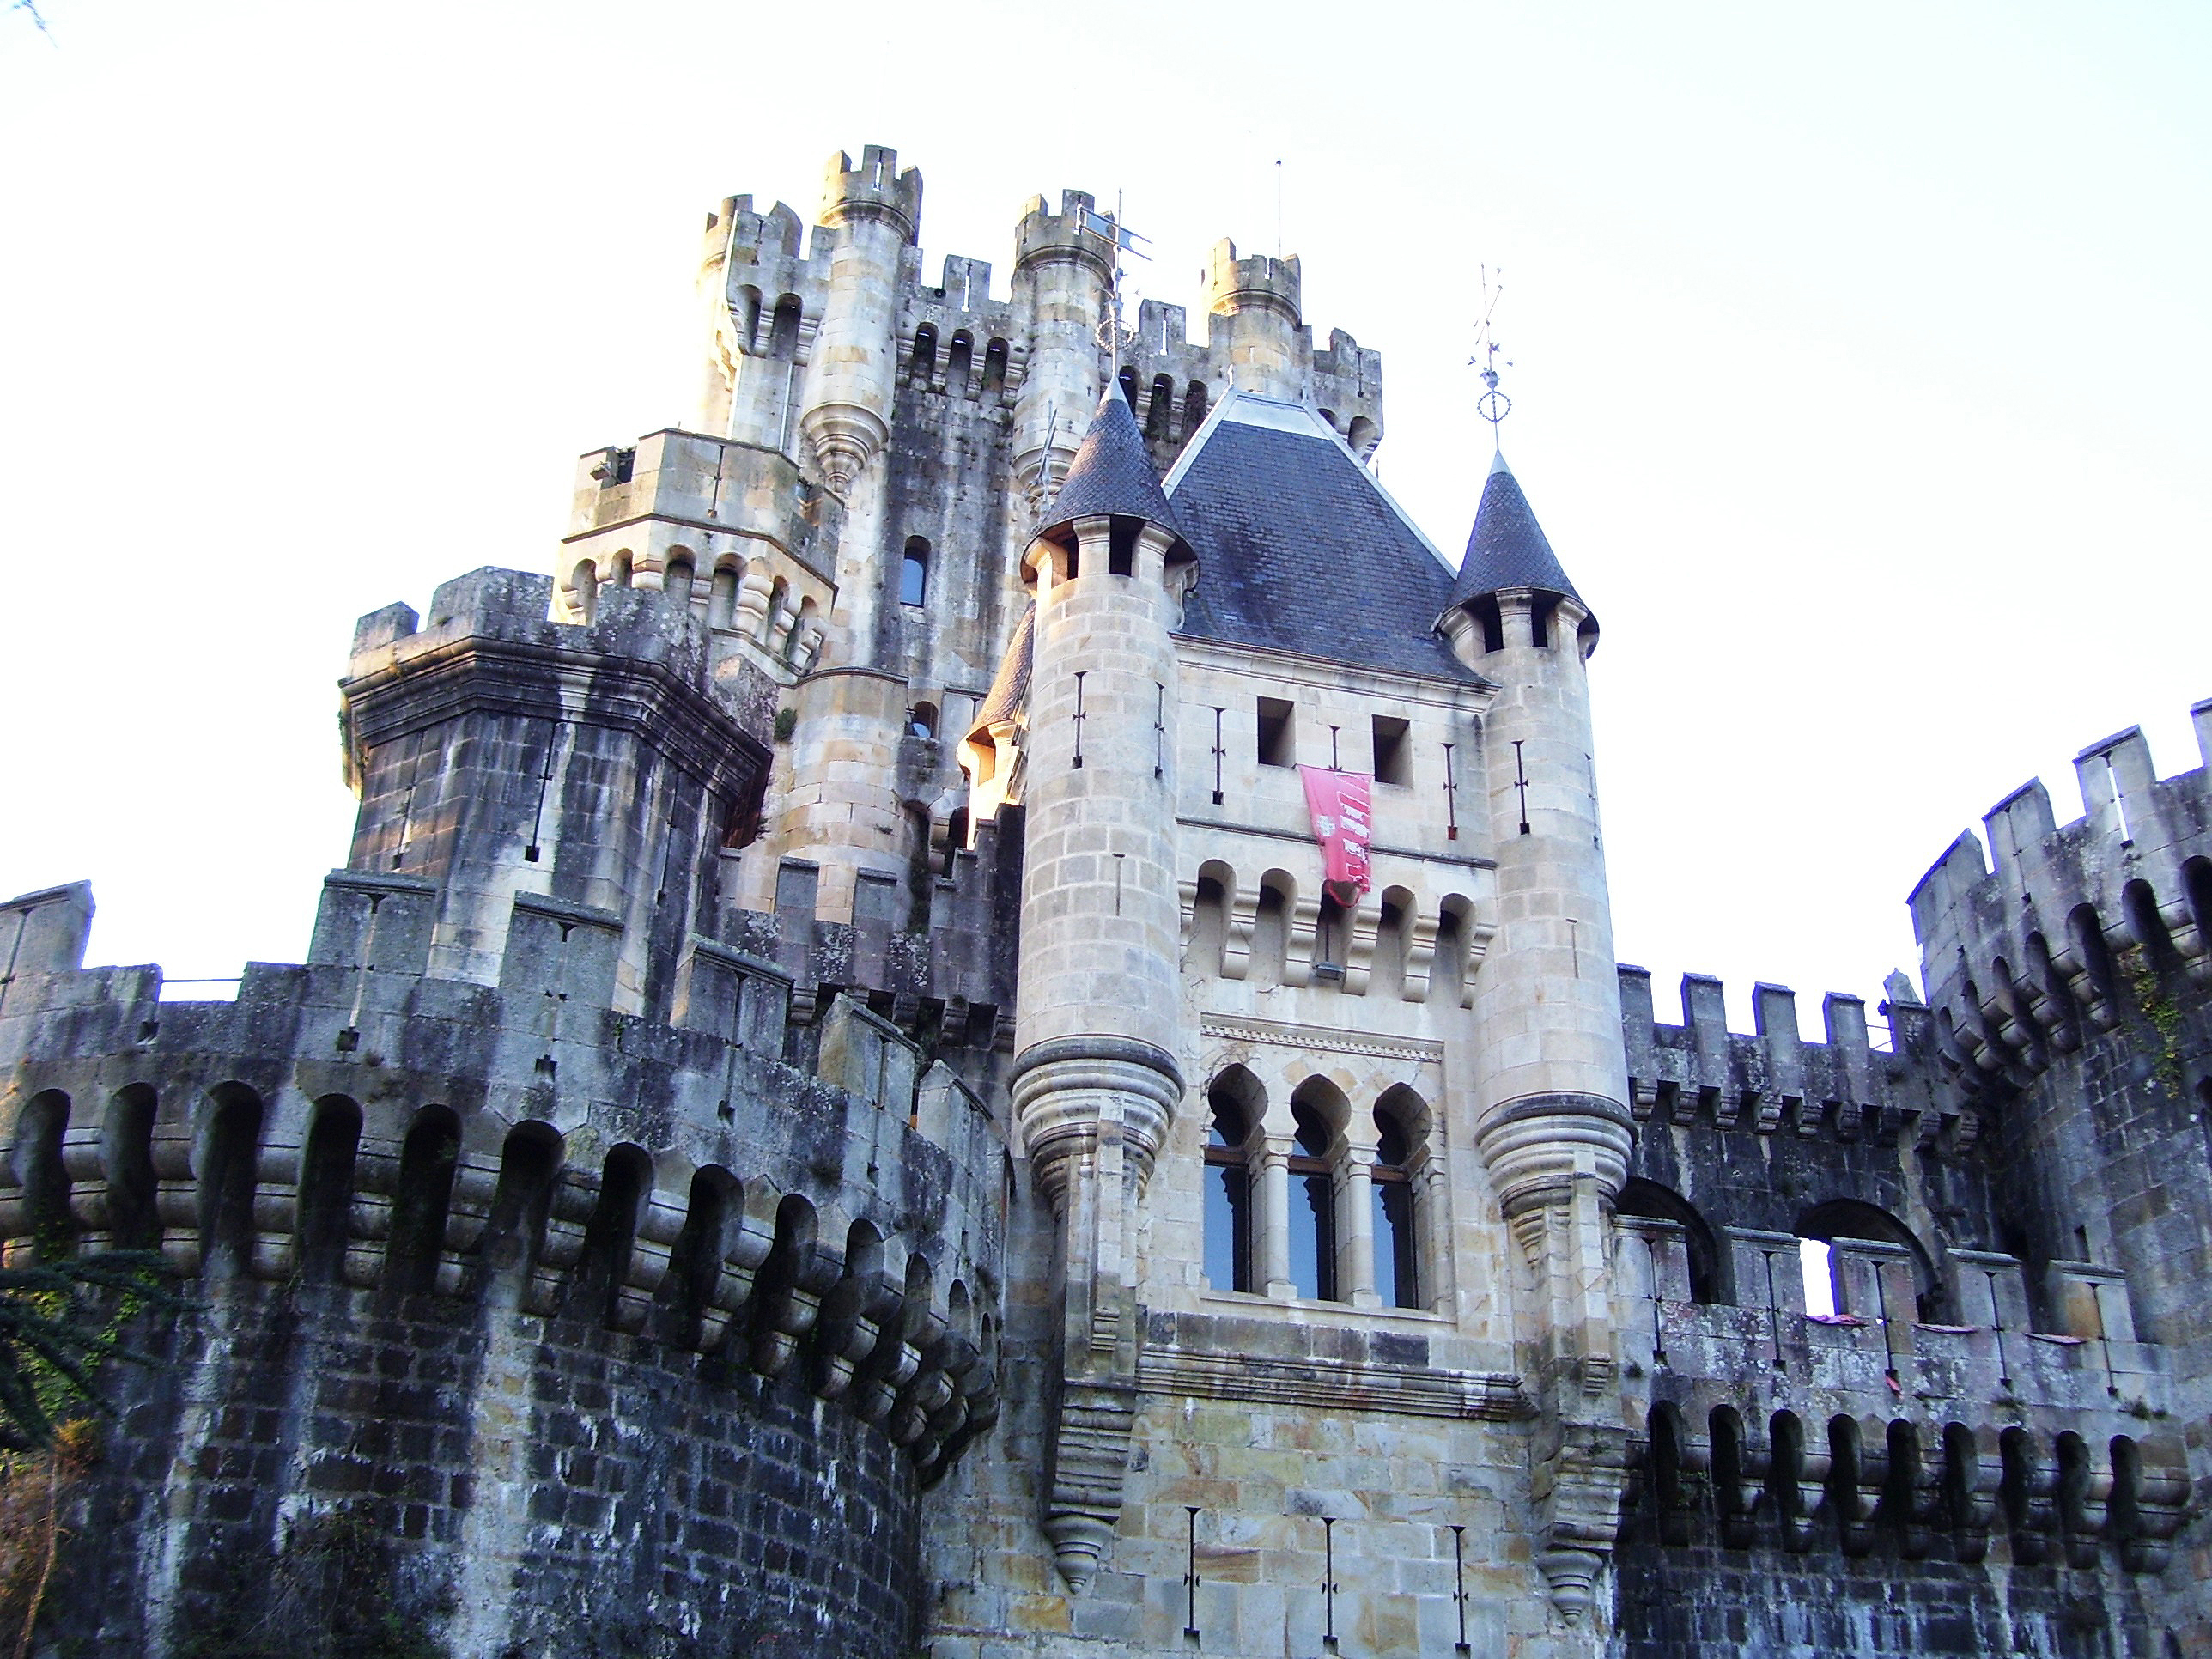 Семерки замка. Замок Бутрон Испания. Замок Сальват Испания. Испания заброшенный замок Бутрон. Замок Бутрон Испания внутри.